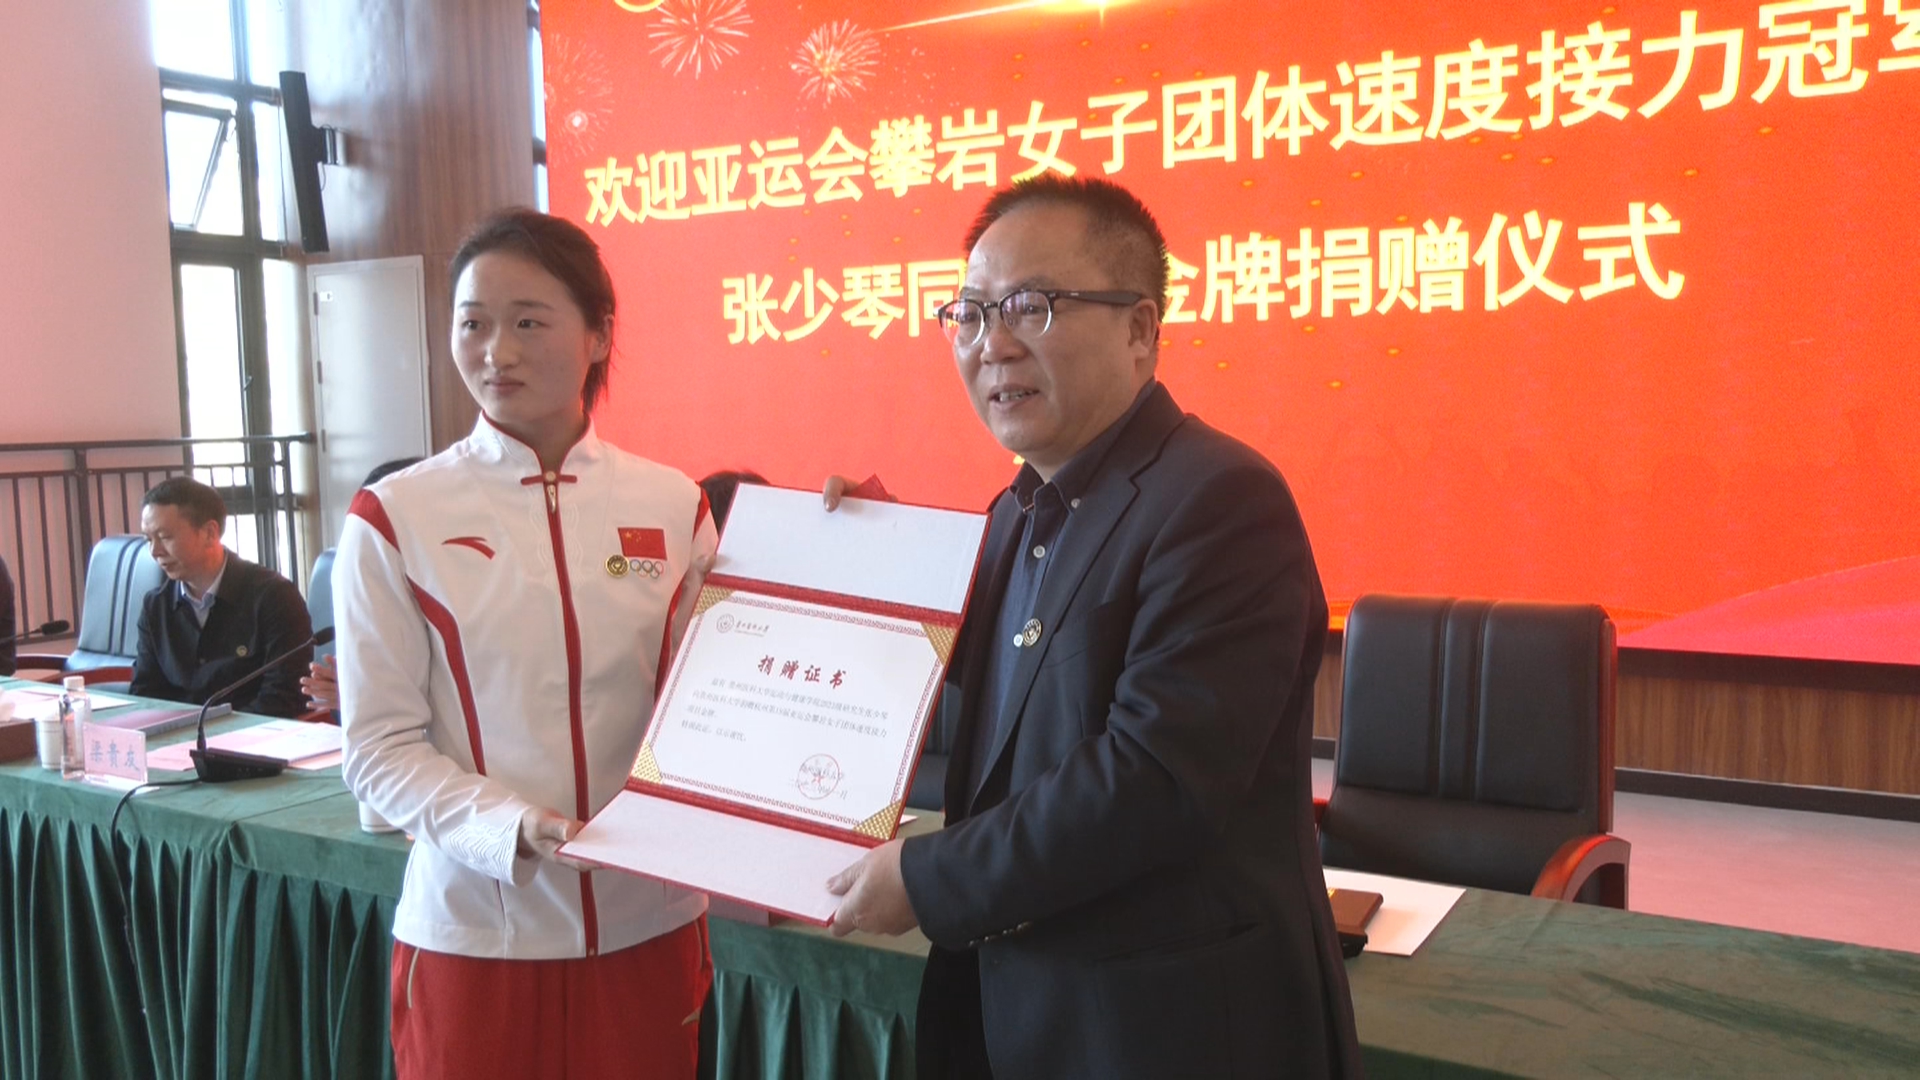 贵州新闻联播丨杭州亚运会冠军张少琴向母校贵州医科大学捐赠金牌